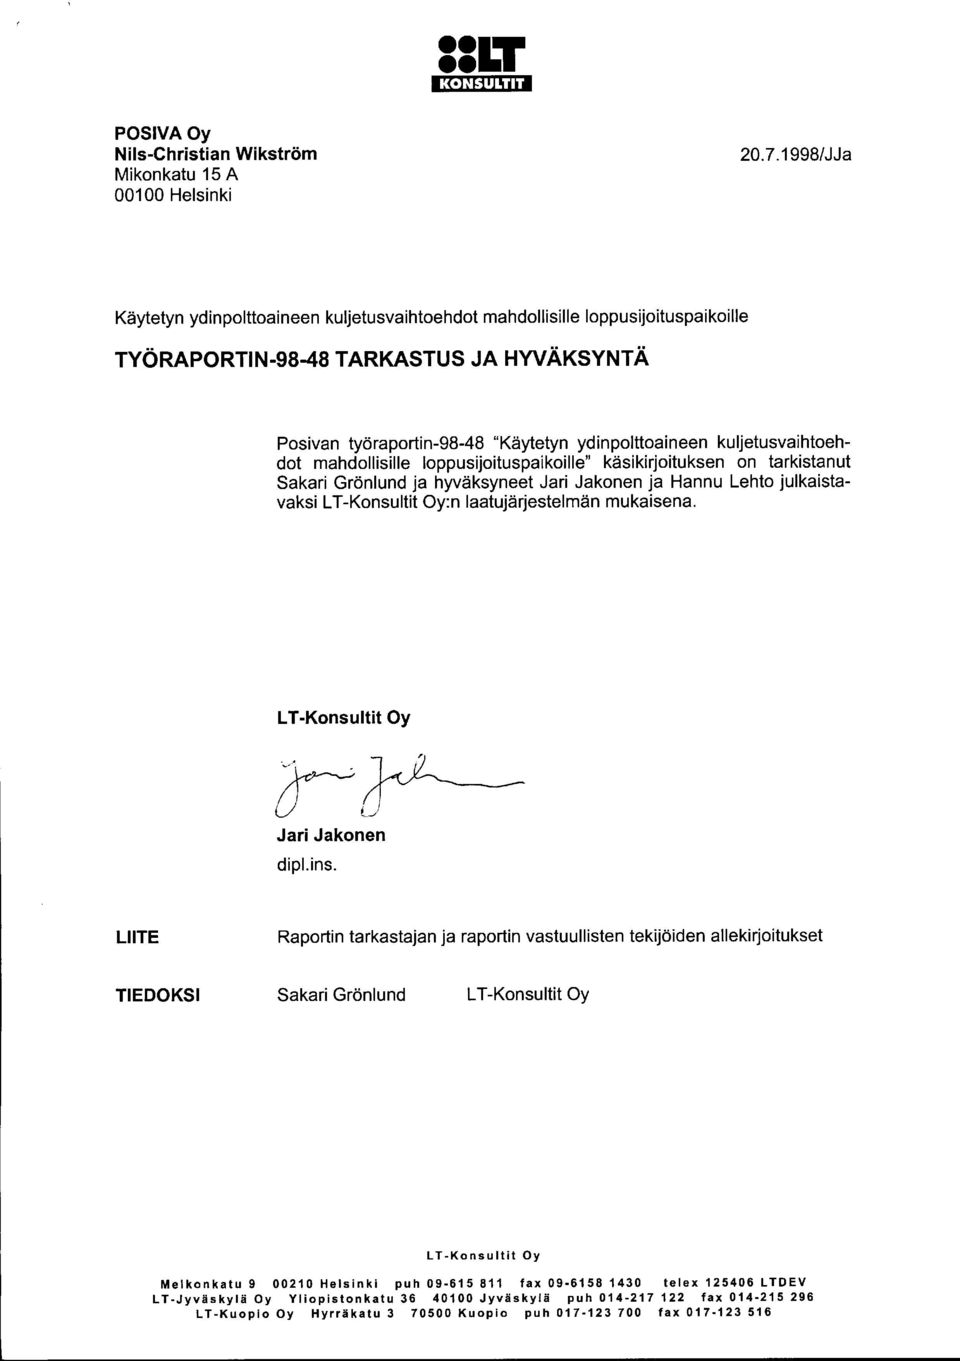 kuljetusvaihtoehdot mahdollisille loppusijoituspaikoille" käsikirjoituksen on tarkistanut Sakari Grönlund ja hyväksyneet Jari Jakonen ja Hannu Lehto julkaistavaksi L T-Konsultit Oy:n